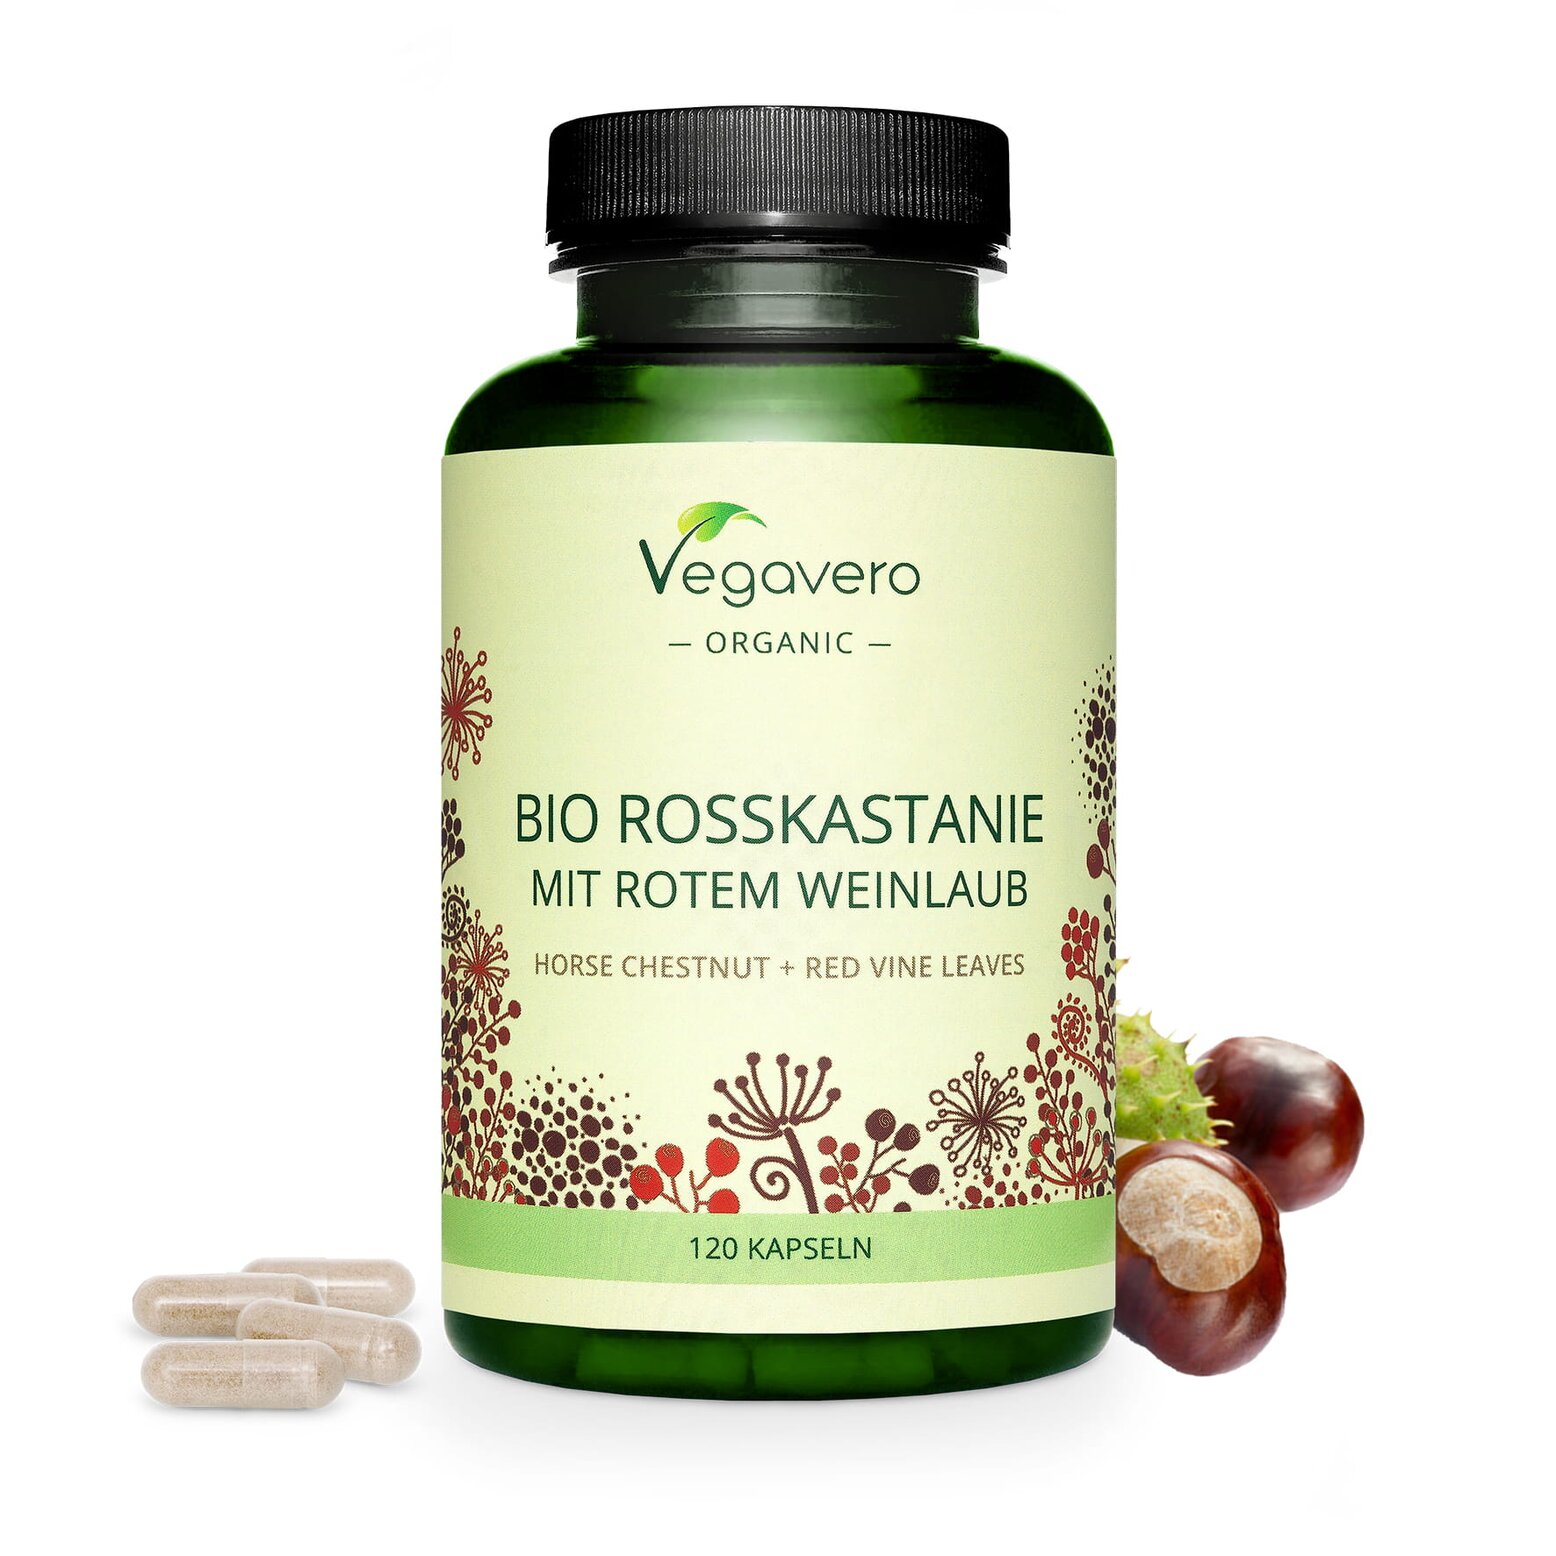 Vegavero Bio Rosskastanie mit rotem Weinlaub | 120 Kapseln | 800mg Extrakt mit Weinlaub und Vitamin C | 100% Bio | Vegan und ohne Zusätze